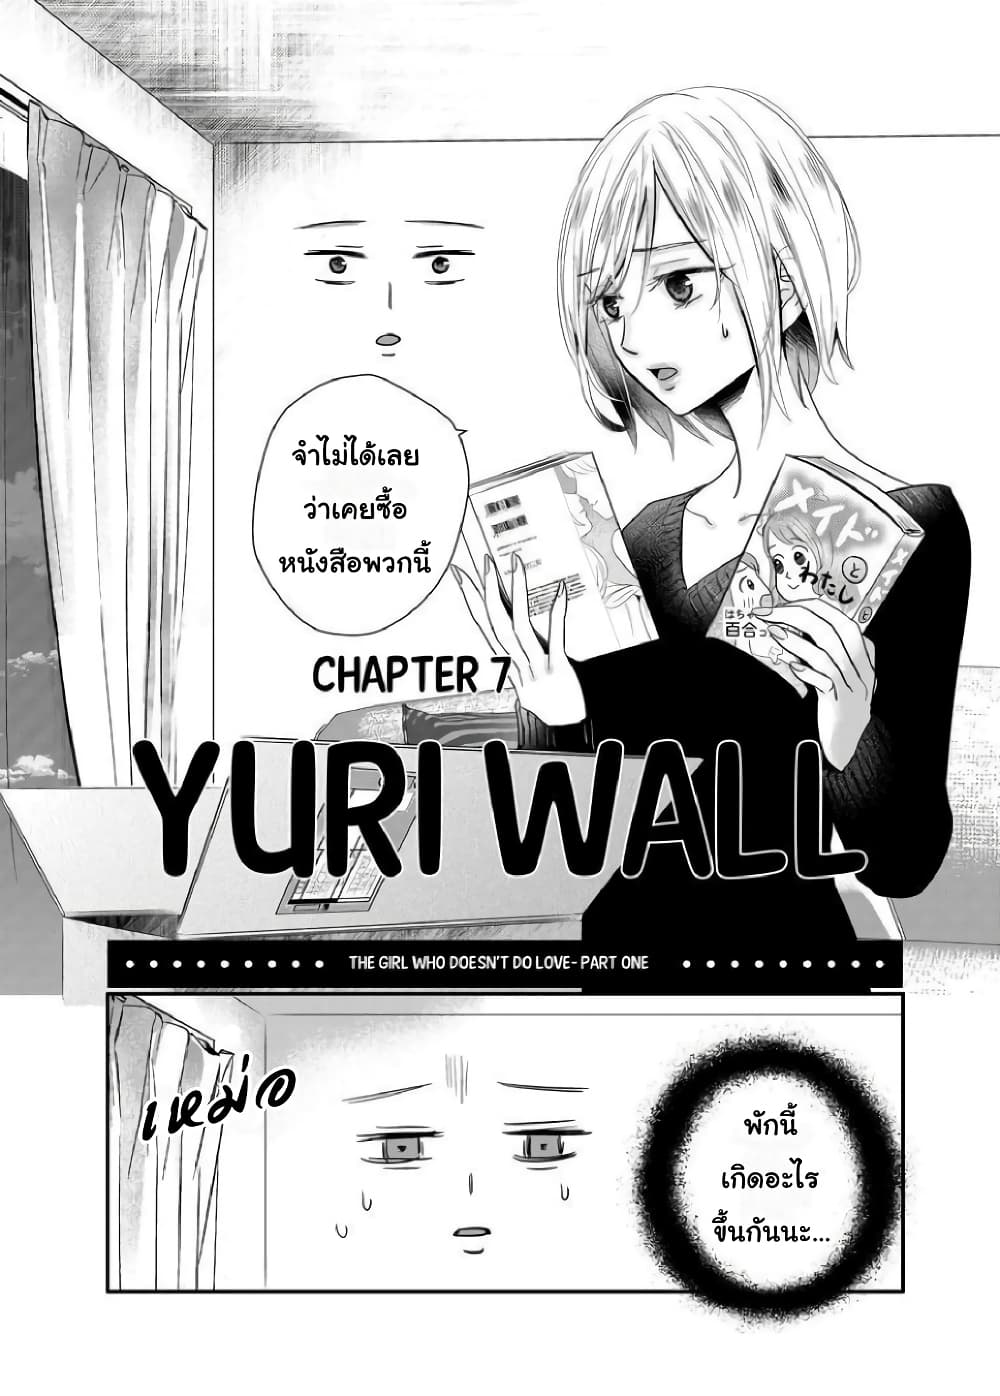 Yuri Wall 7 (4)